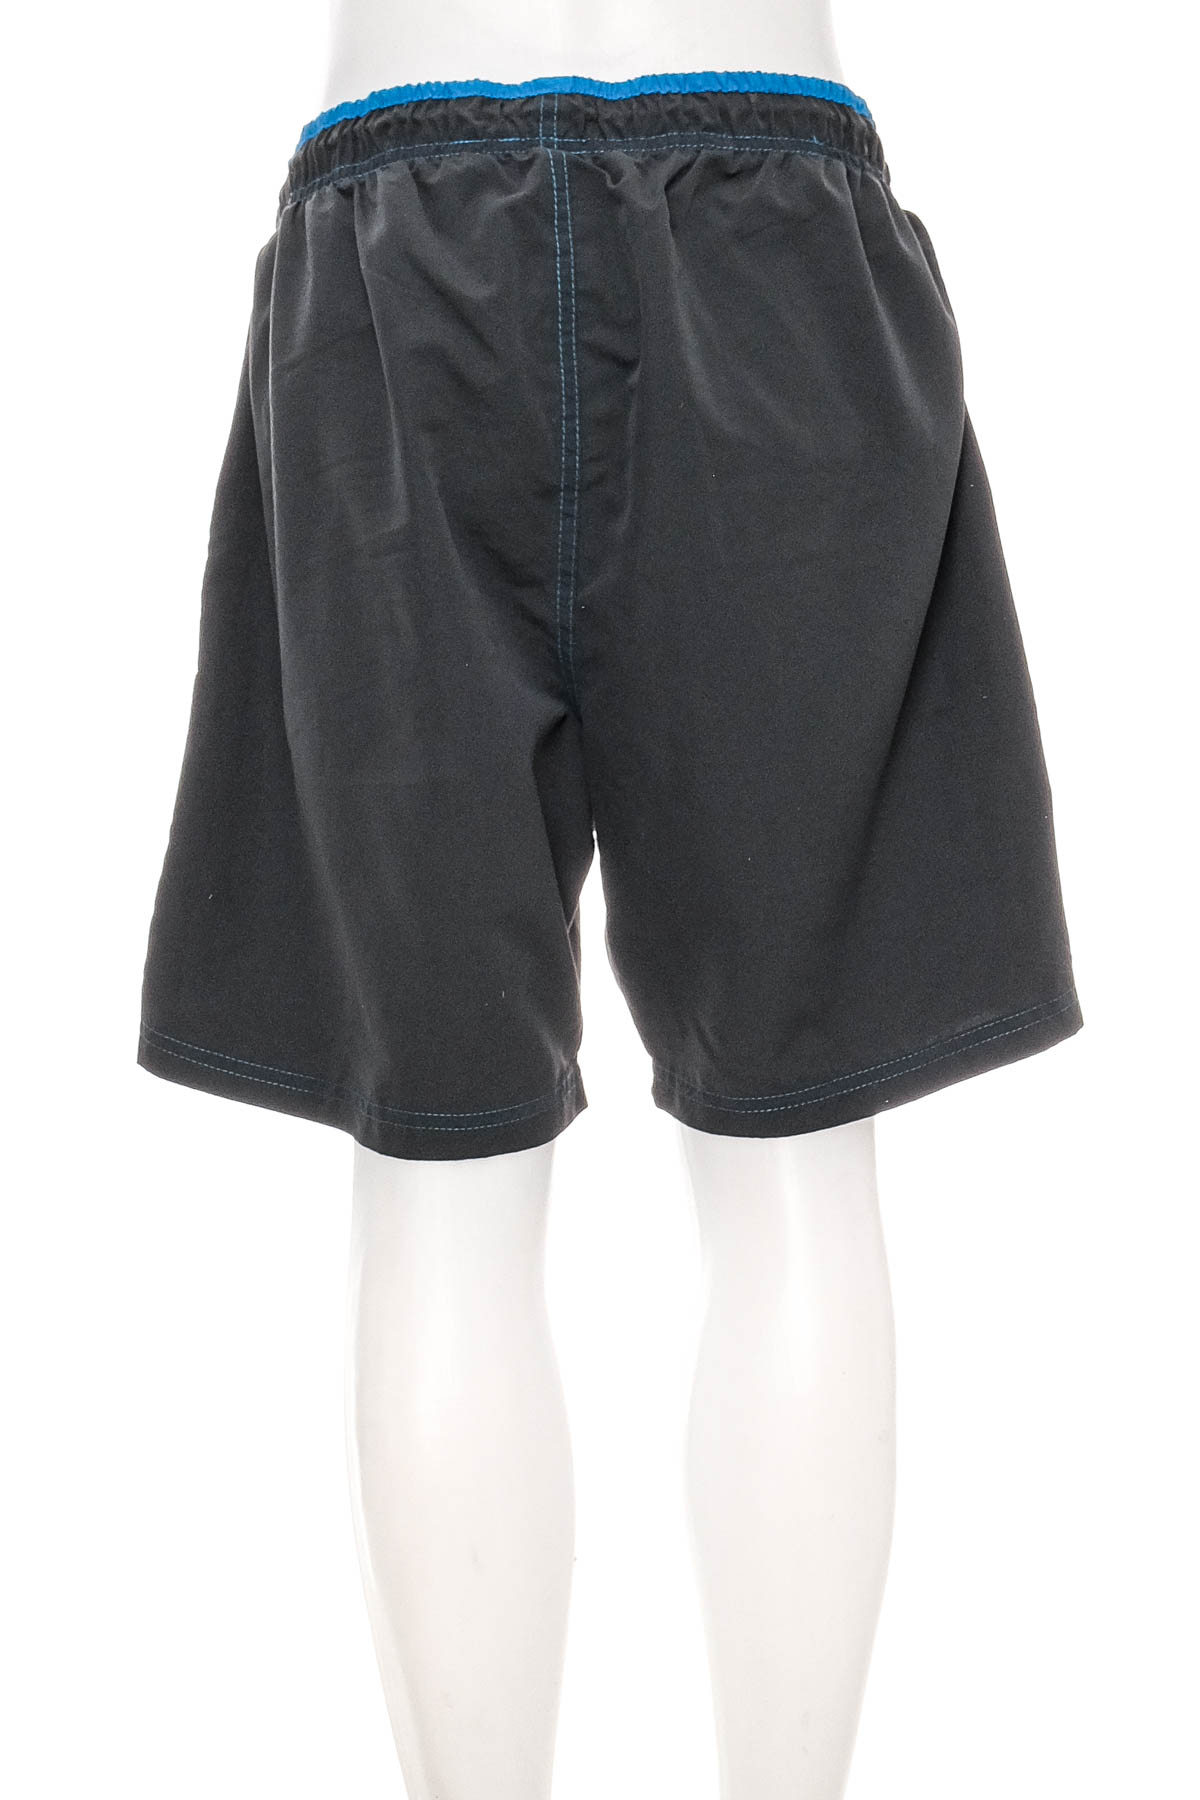 Men's shorts - ATLAS for MEN - 1